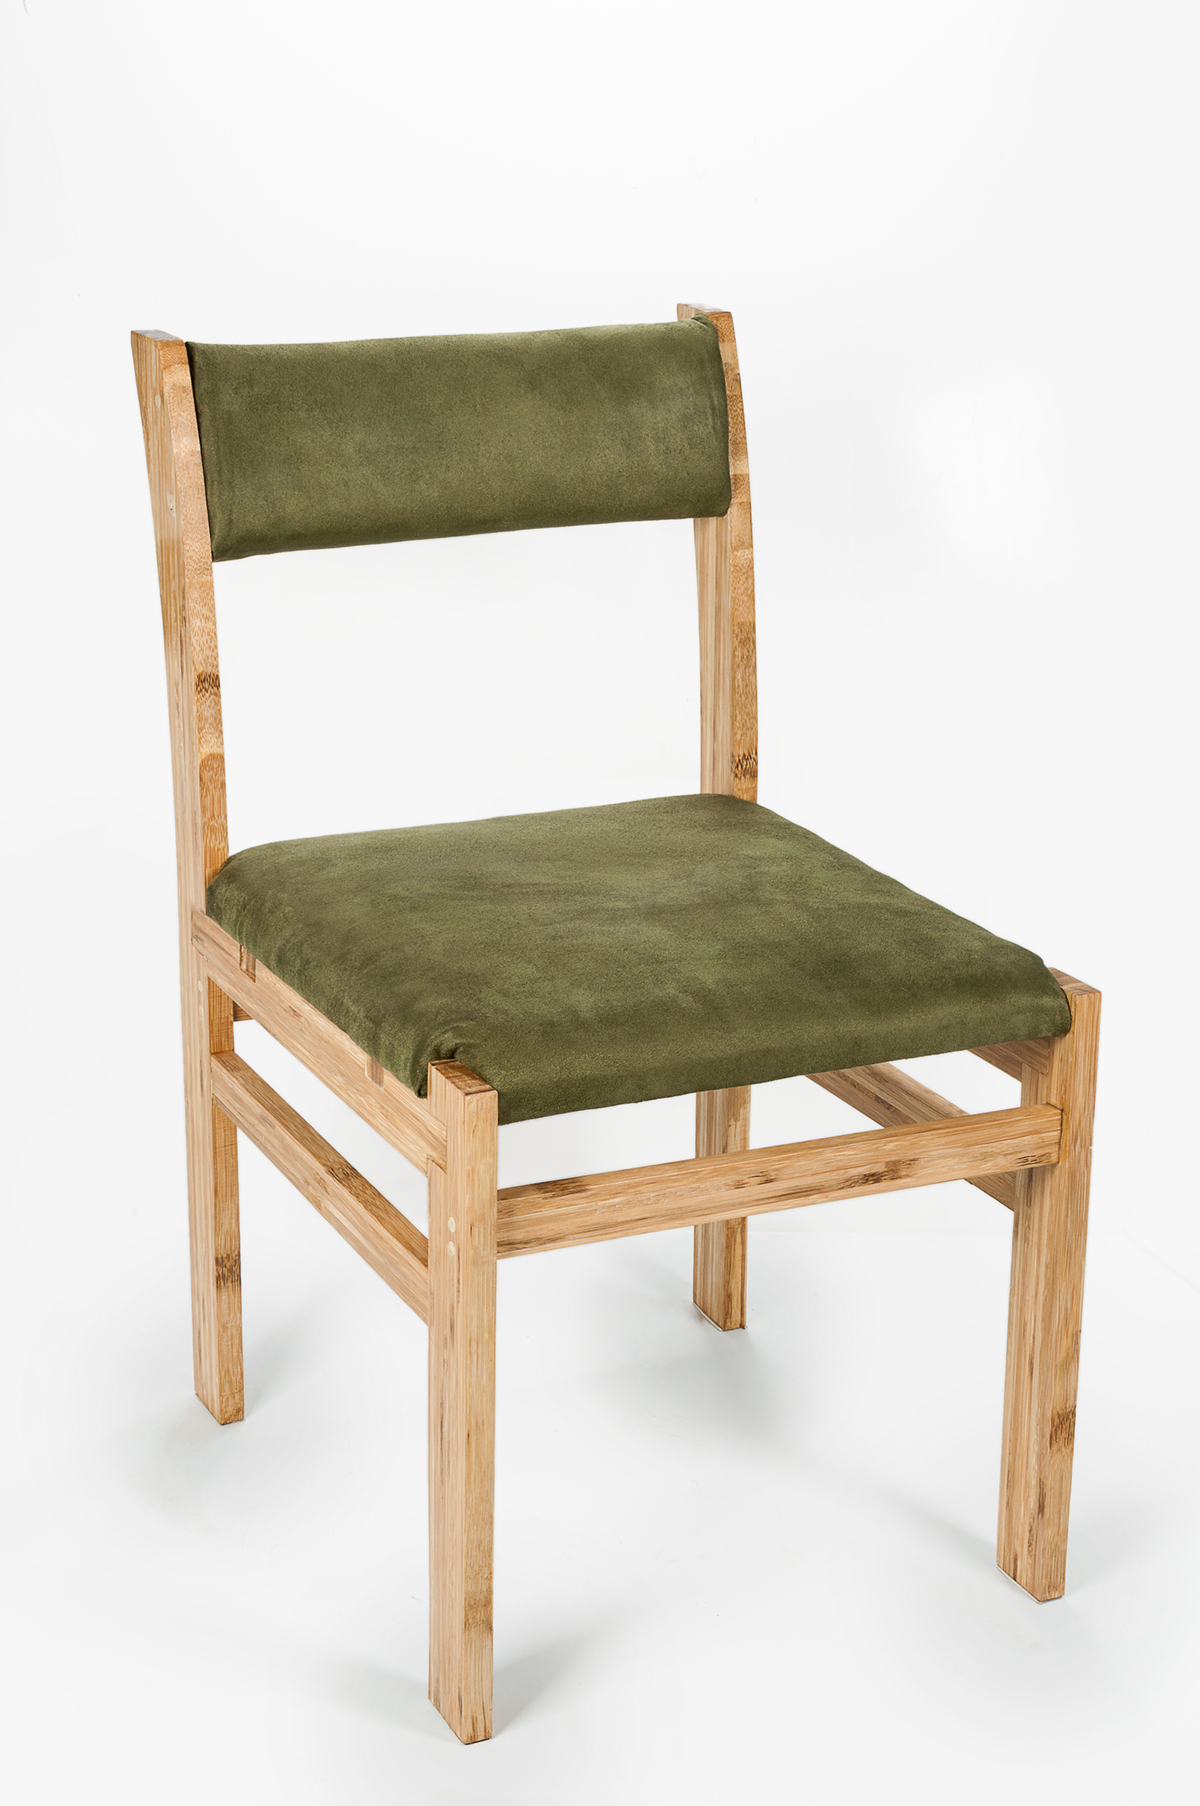 taquara unesp bauru colozio design product furniture